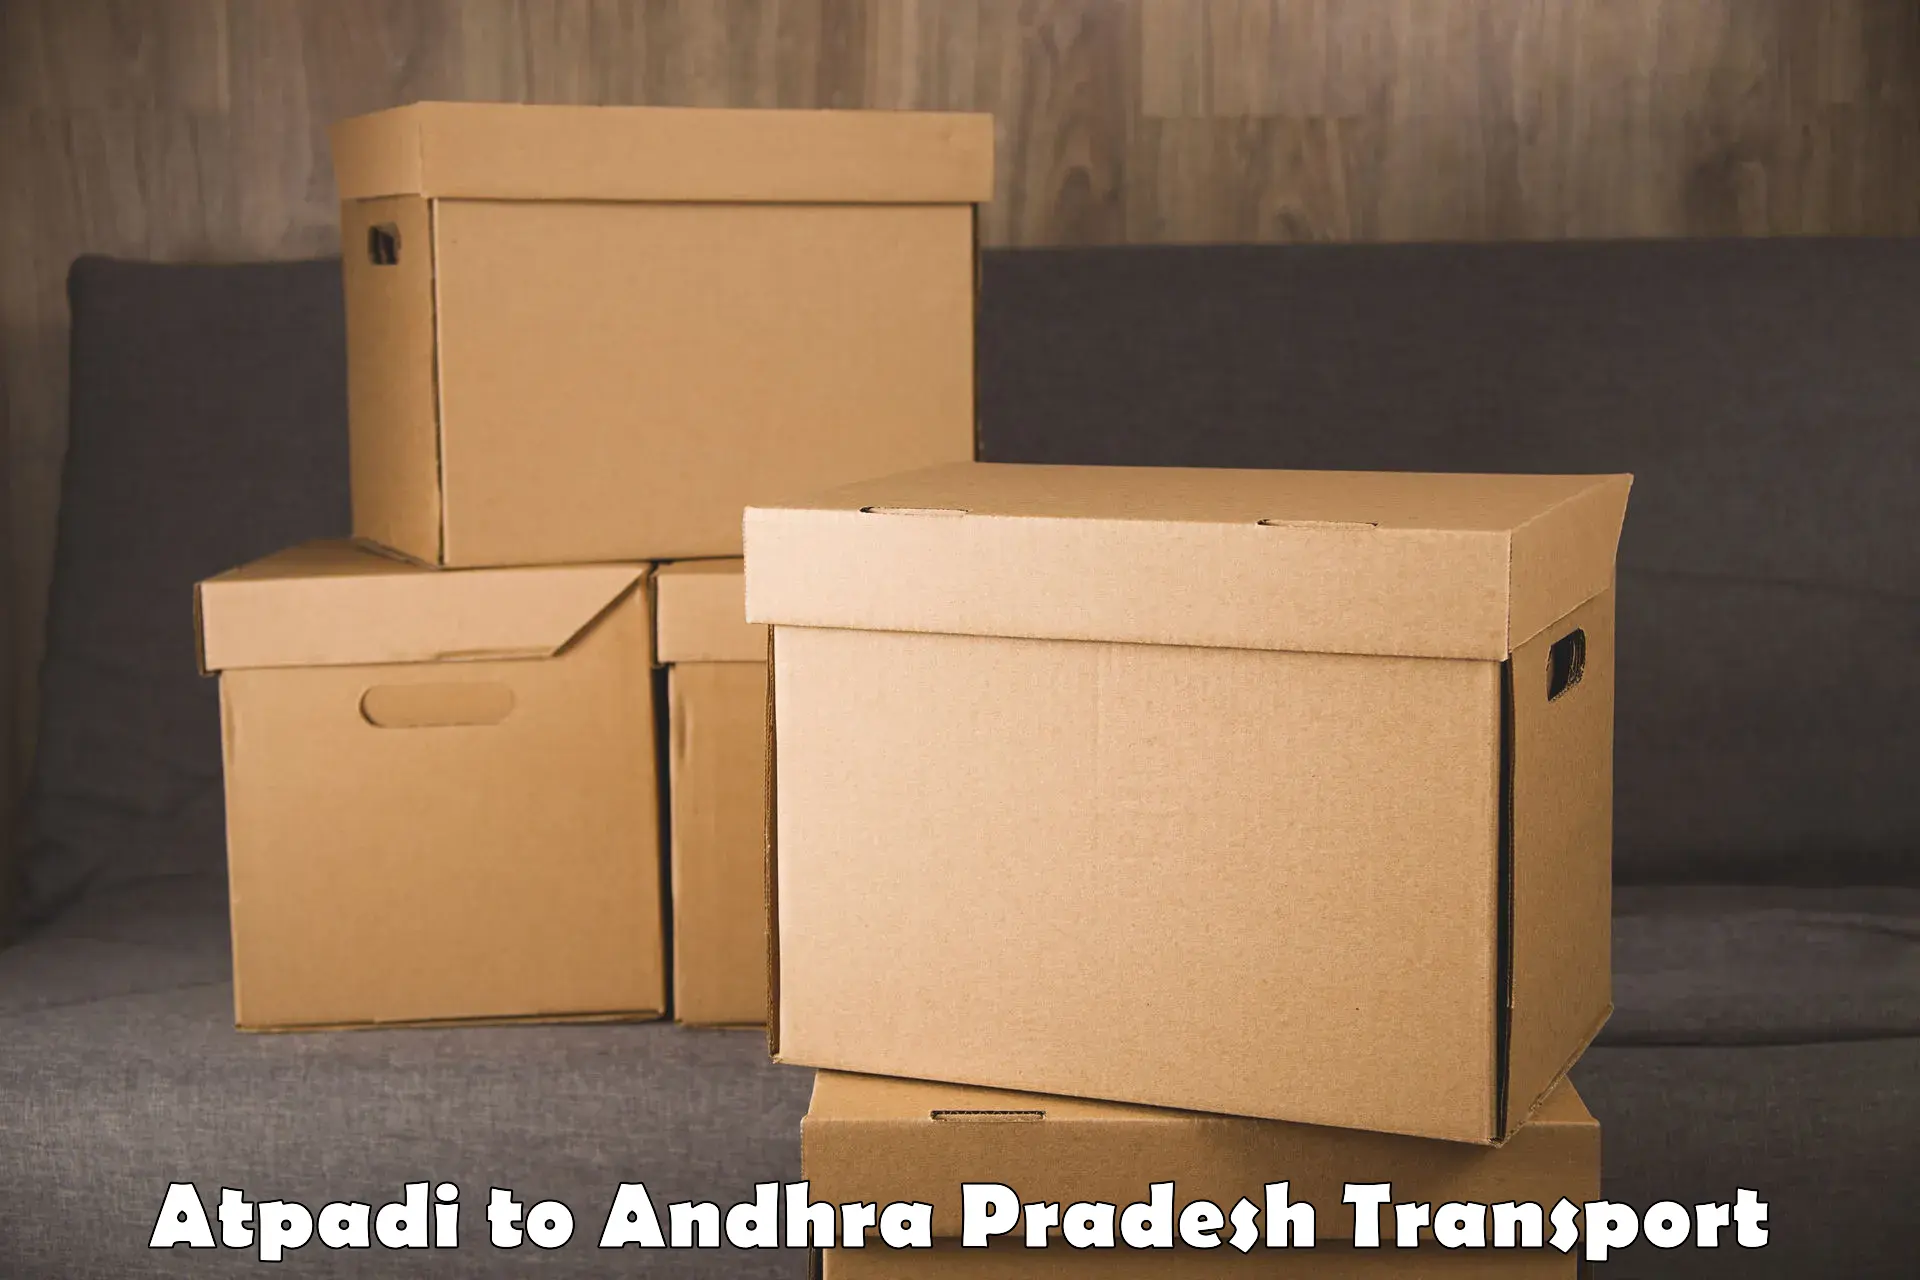 Furniture transport service Atpadi to Tripuranthakam